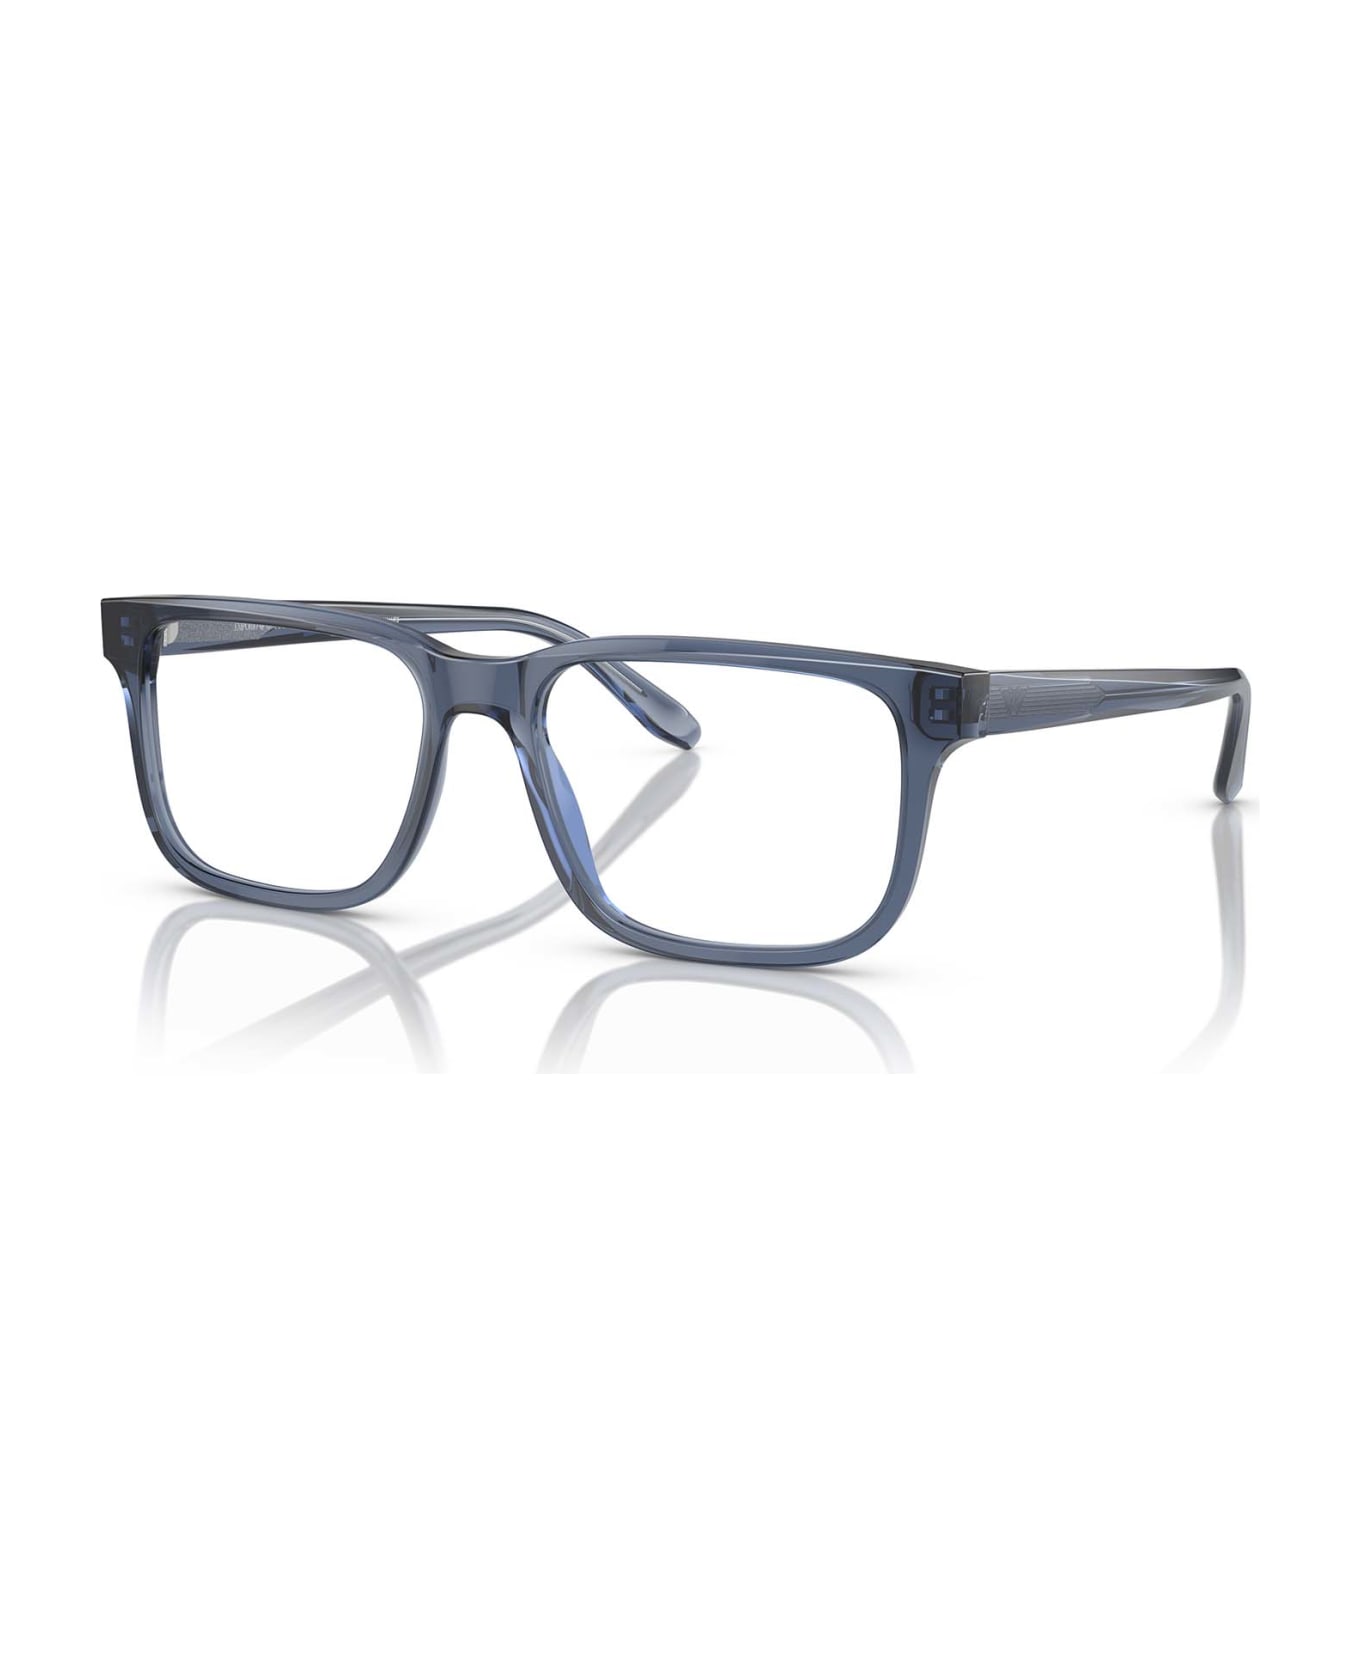 Emporio Armani Ea3218 Shiny Transparent Blue Glasses - Shiny Transparent Blue アイウェア